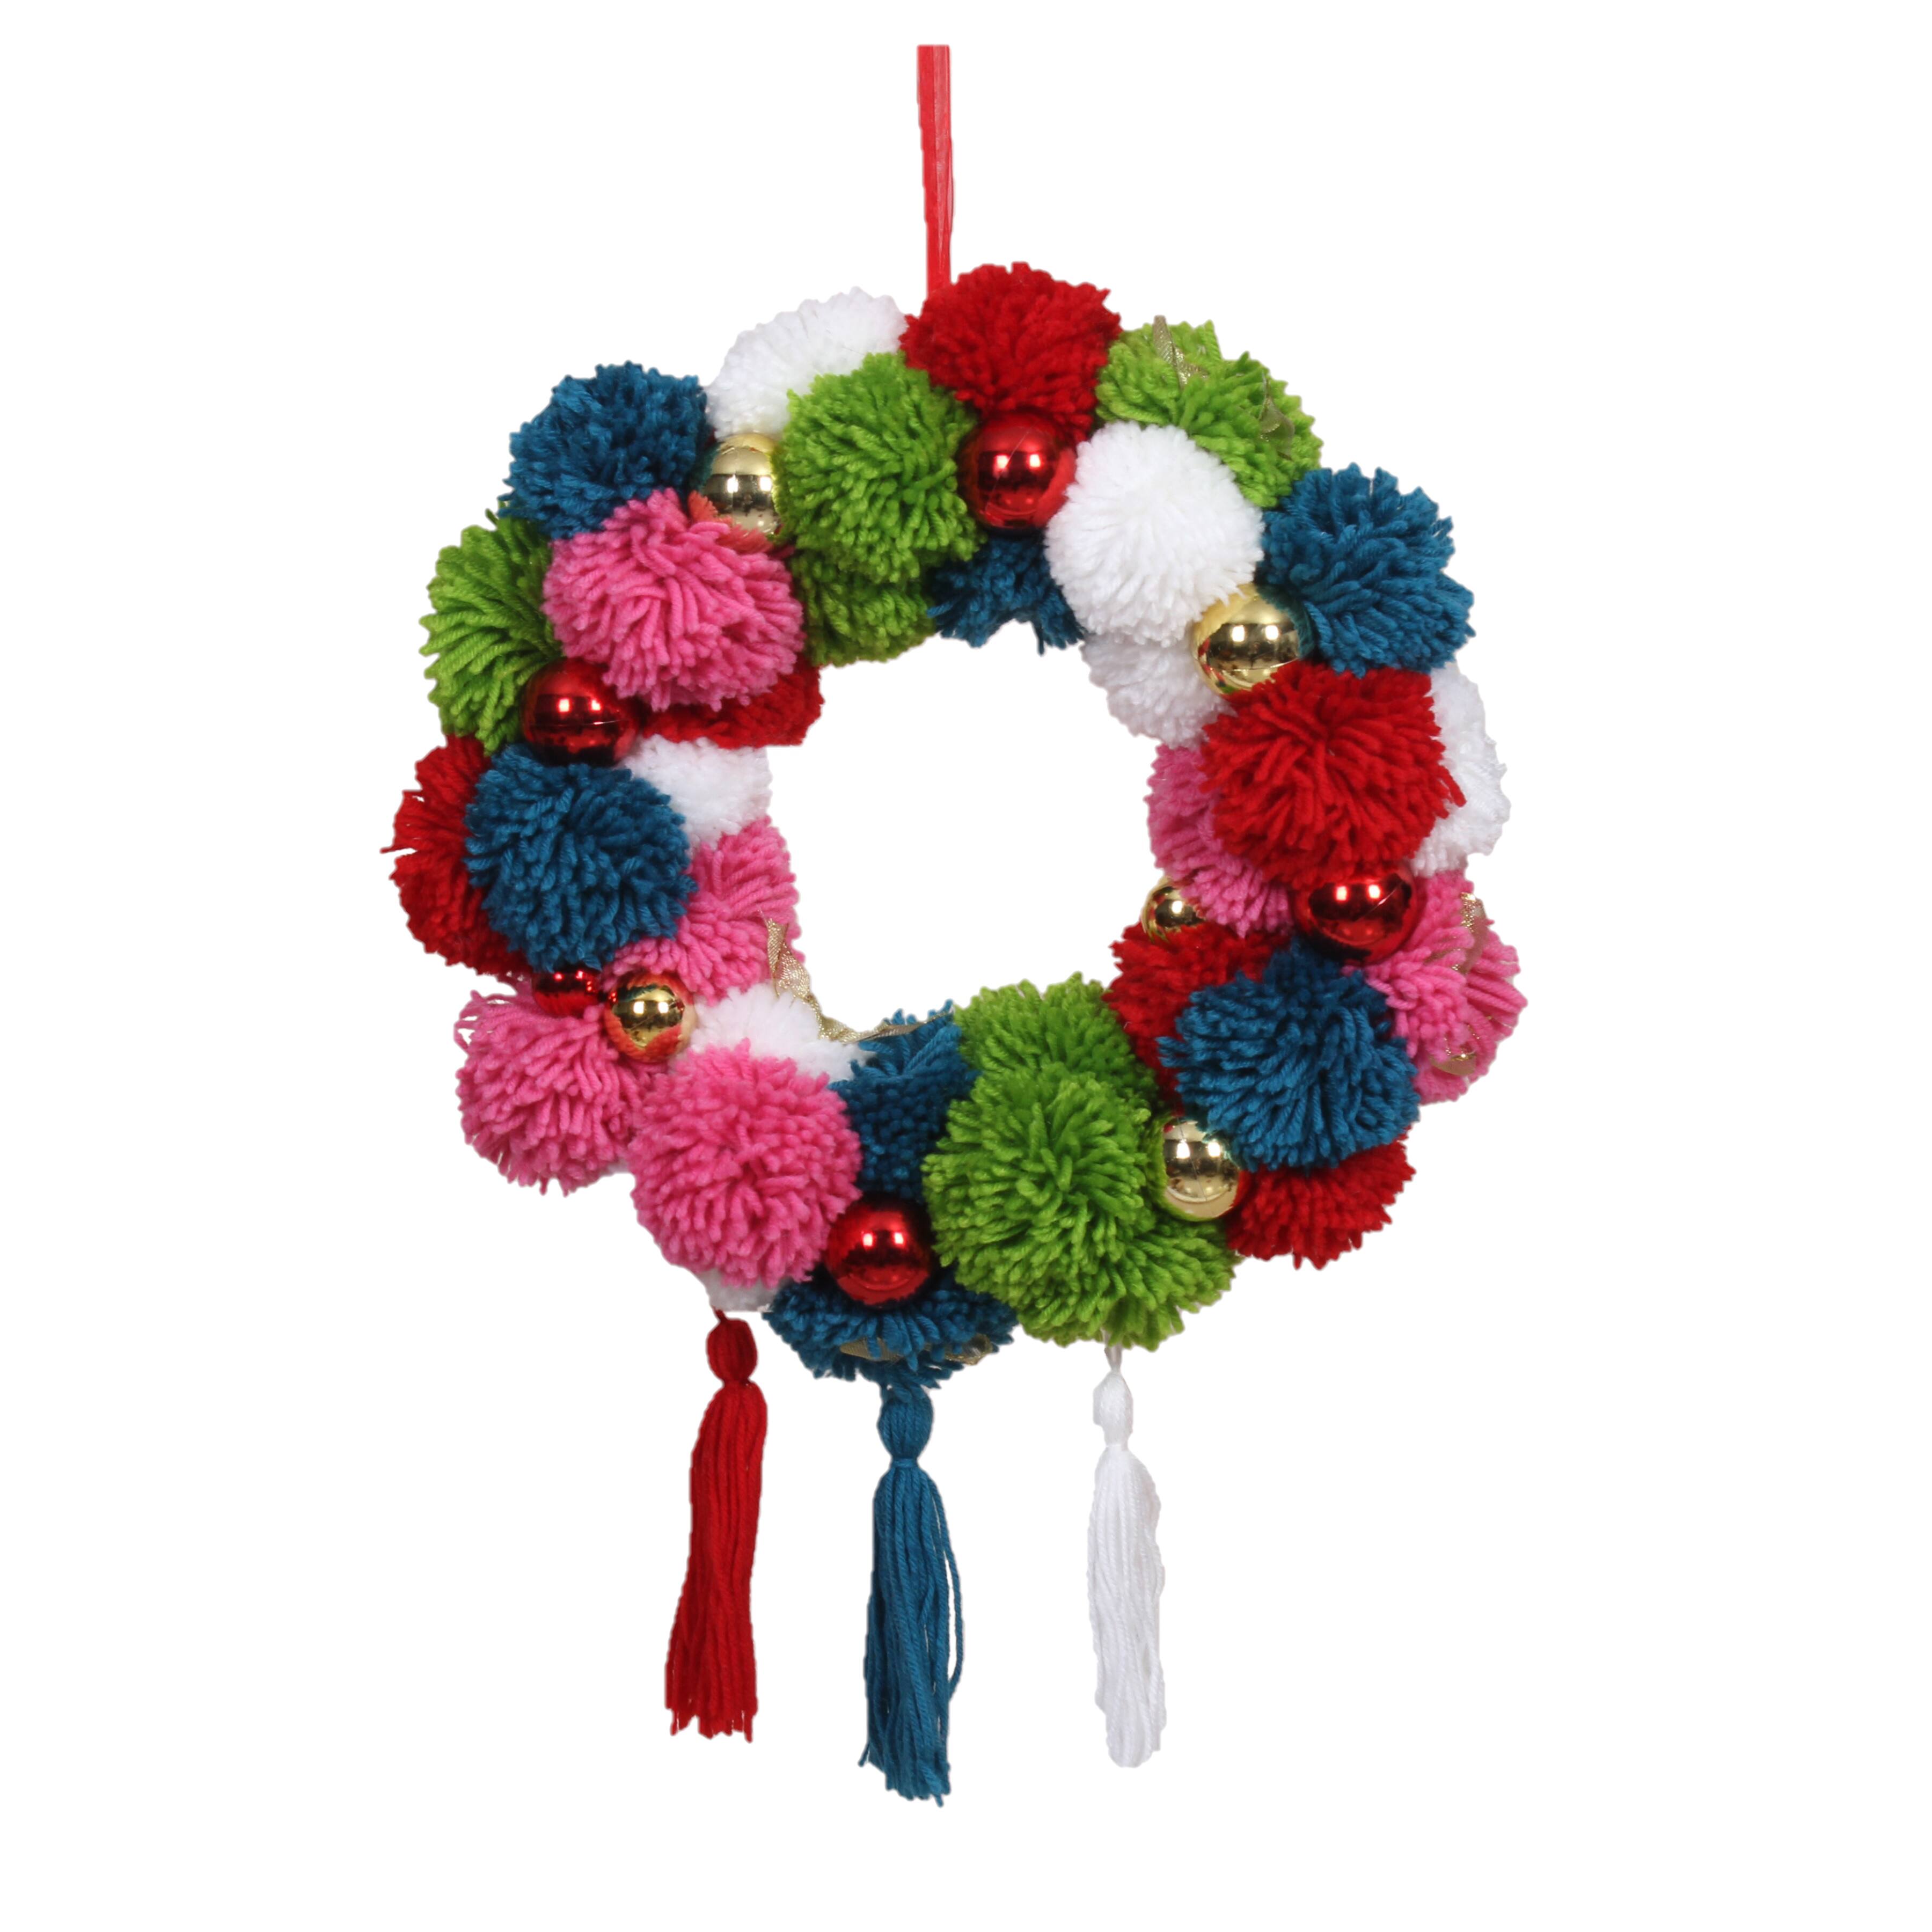 Minde om Skærm Let at læse 19" Colourful Pom-pom Wreath by Ashland® | Michaels